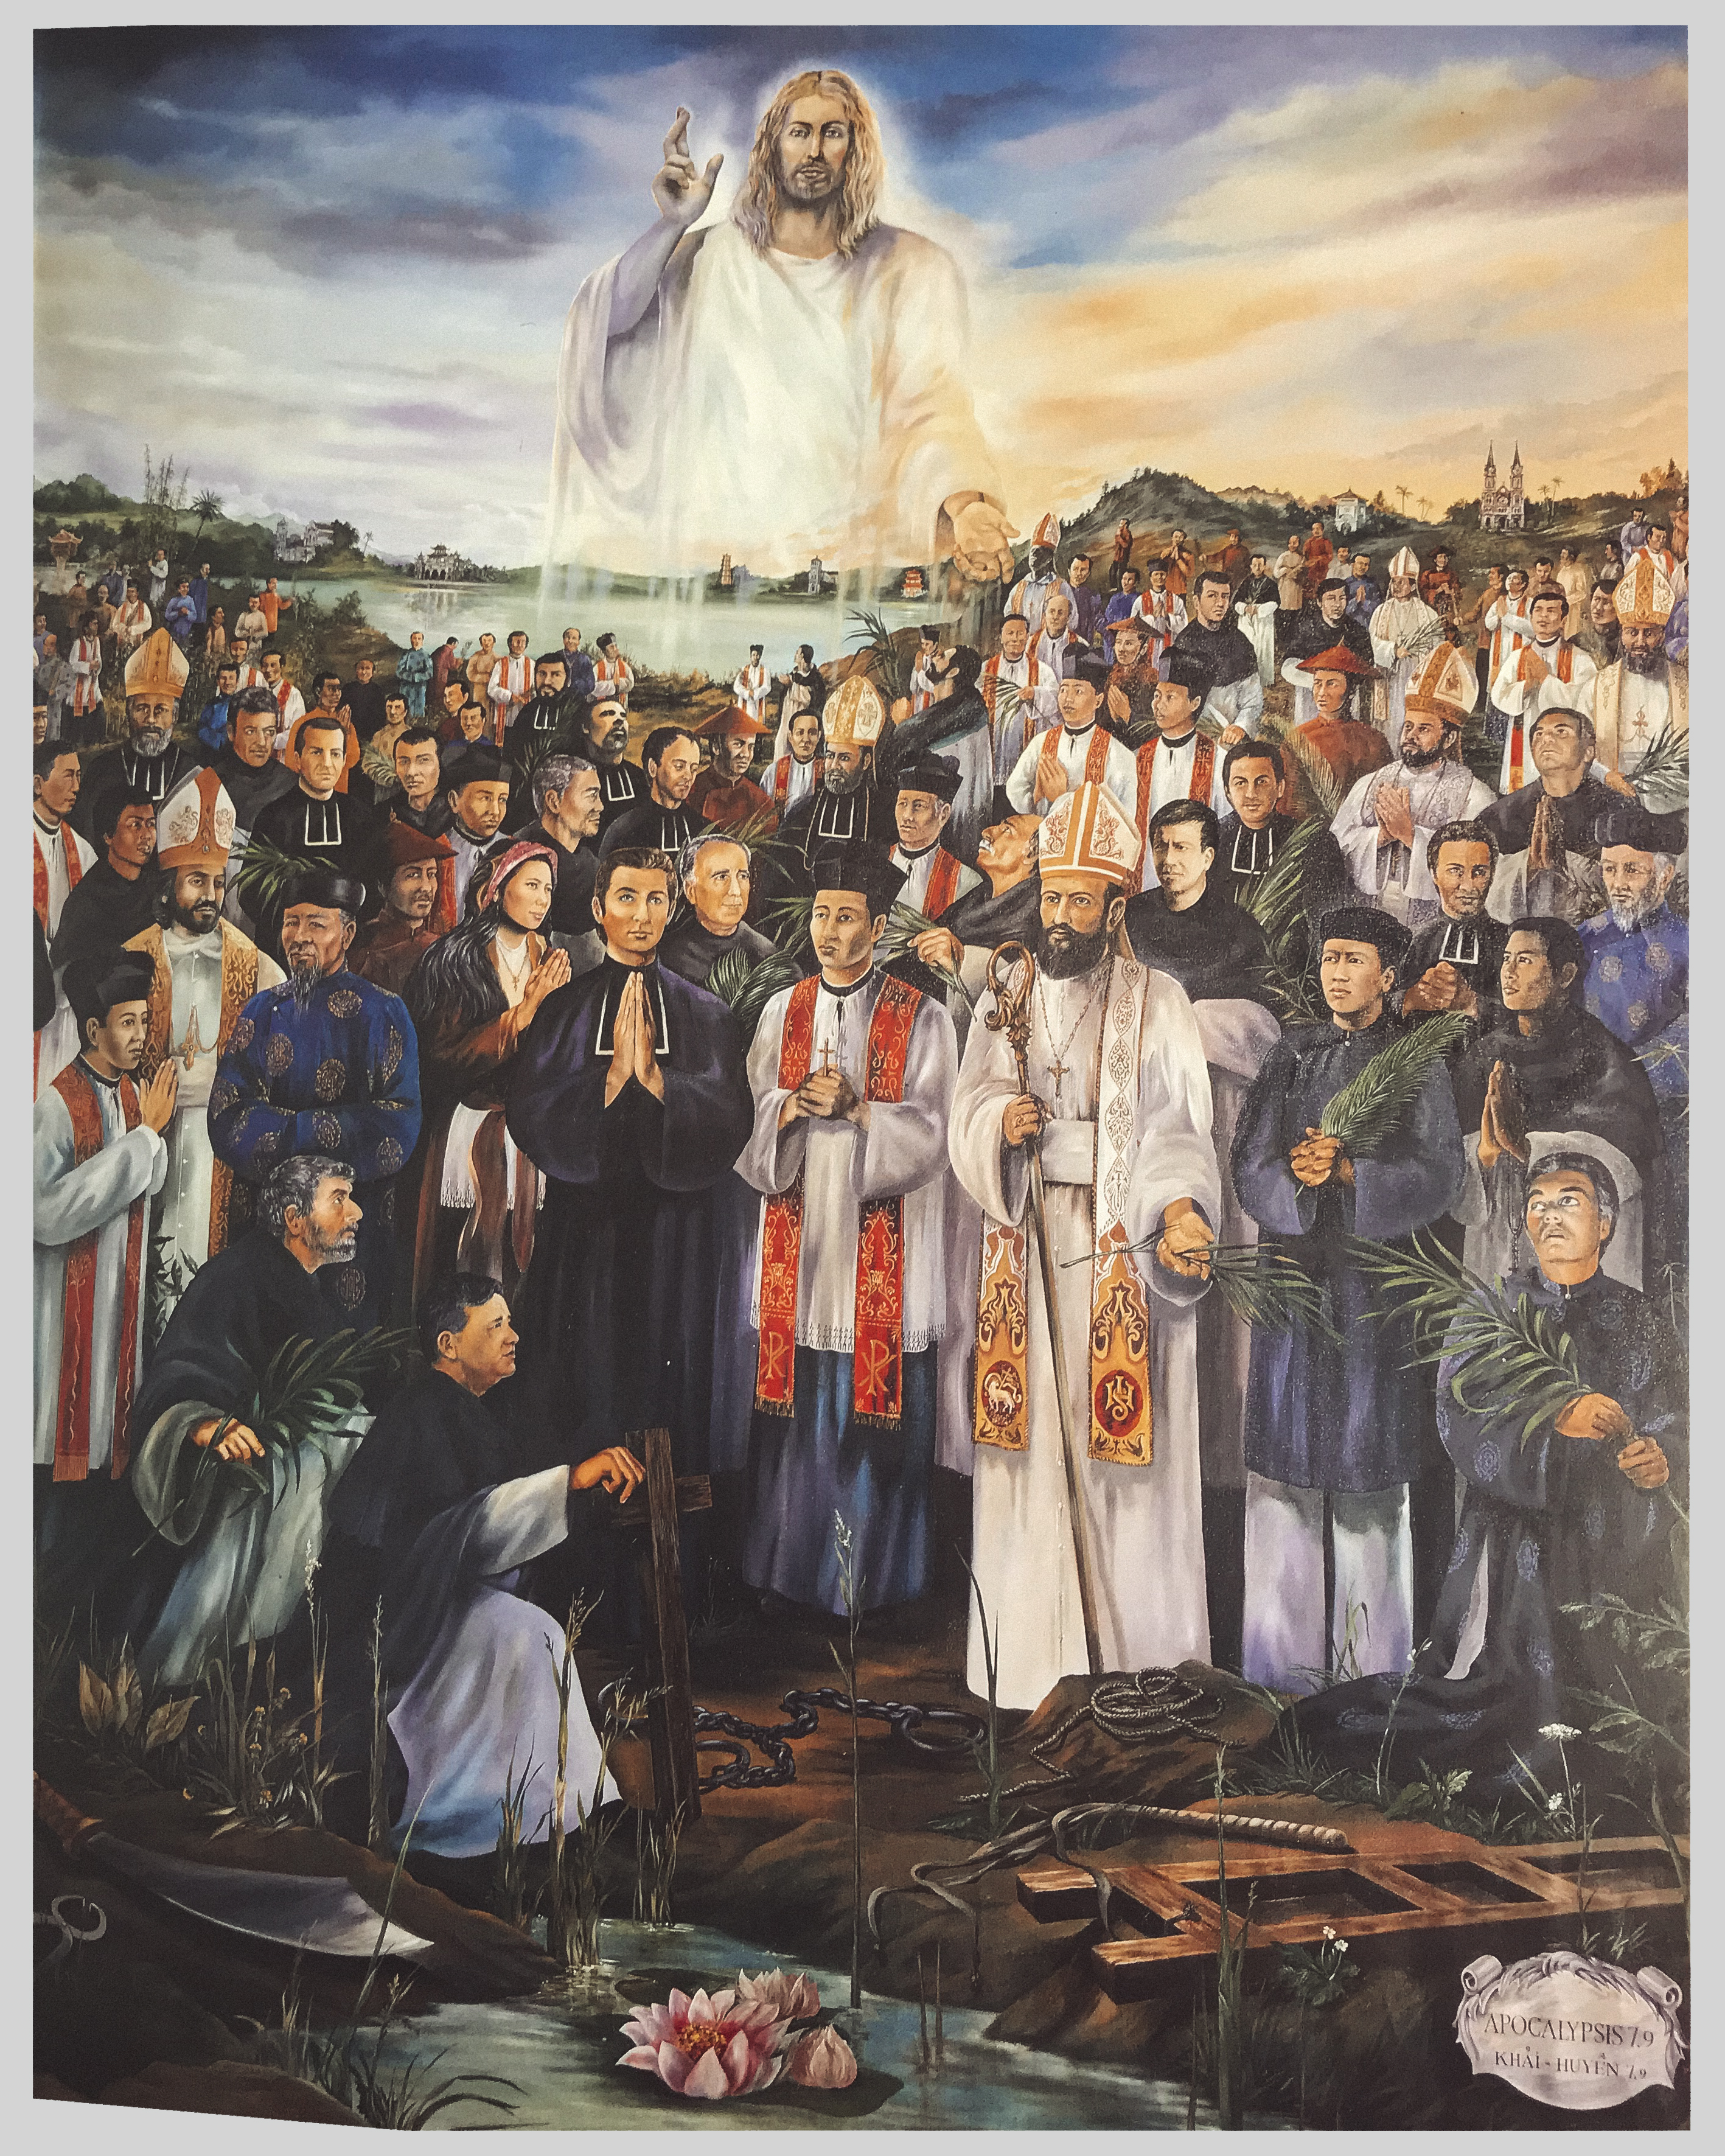 Chúa nhật 33 Thường niên năm B - Kính trọng thể các thánh Tử đạo Việt Nam (Lc 9,23-26)